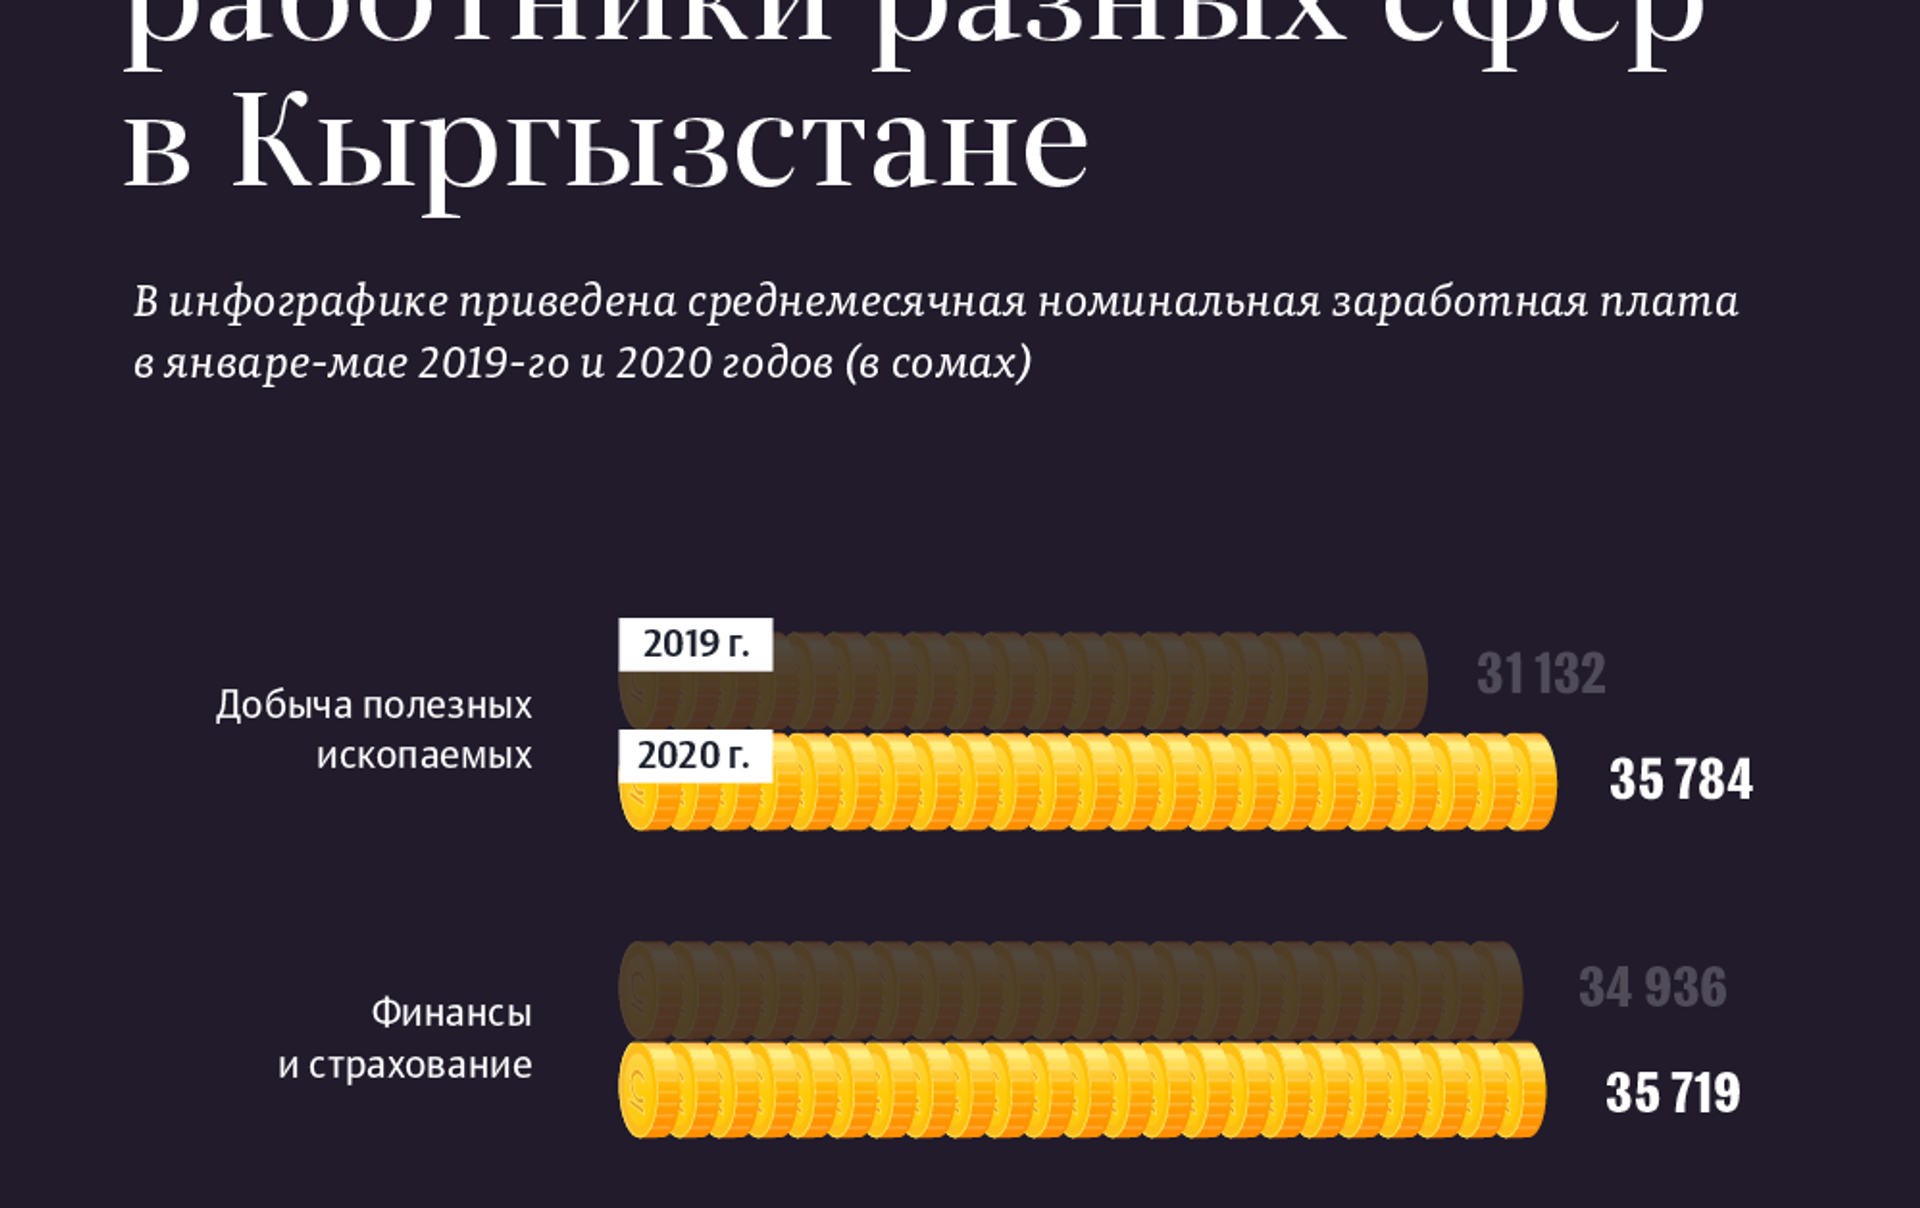 Сколько зарабатывает писатель в россии. Сколько зарабатывает Эдисон. Кто сколько зарабатывает в Кыргызстане. Инфографика фигурка работников разных сфер. Сколько зарабатывает в день Эдисон.